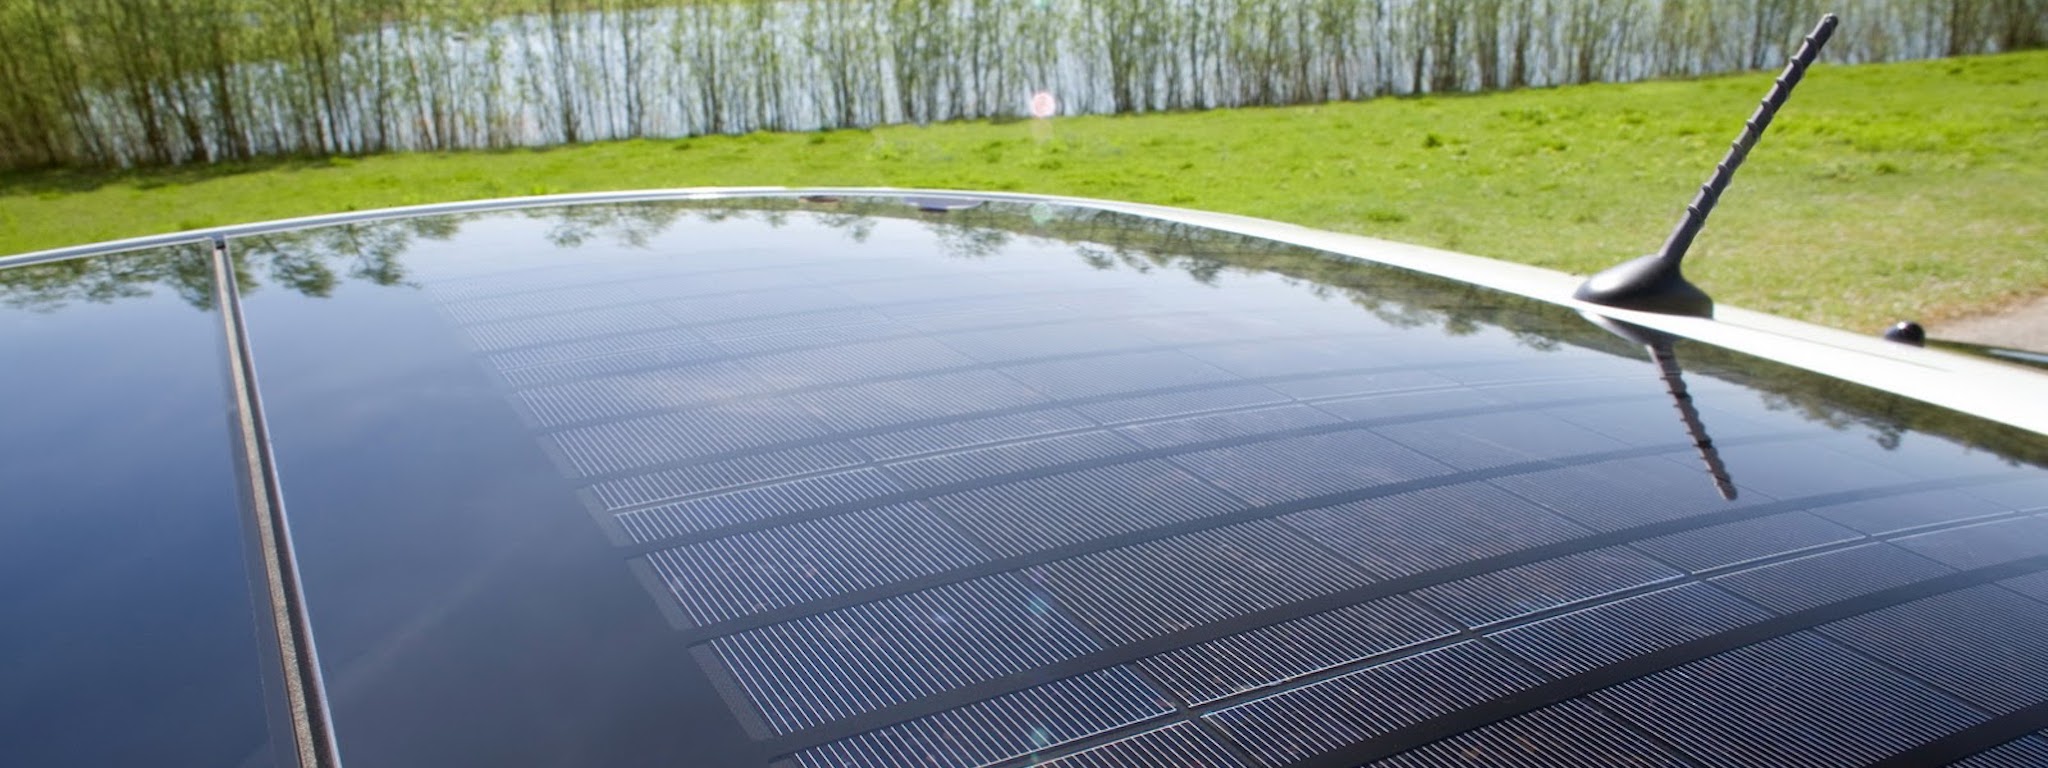 Panasonic bắt đầu sản xuất các tấm pin năng lượng mặt trời gắn trên mui xe ô tô